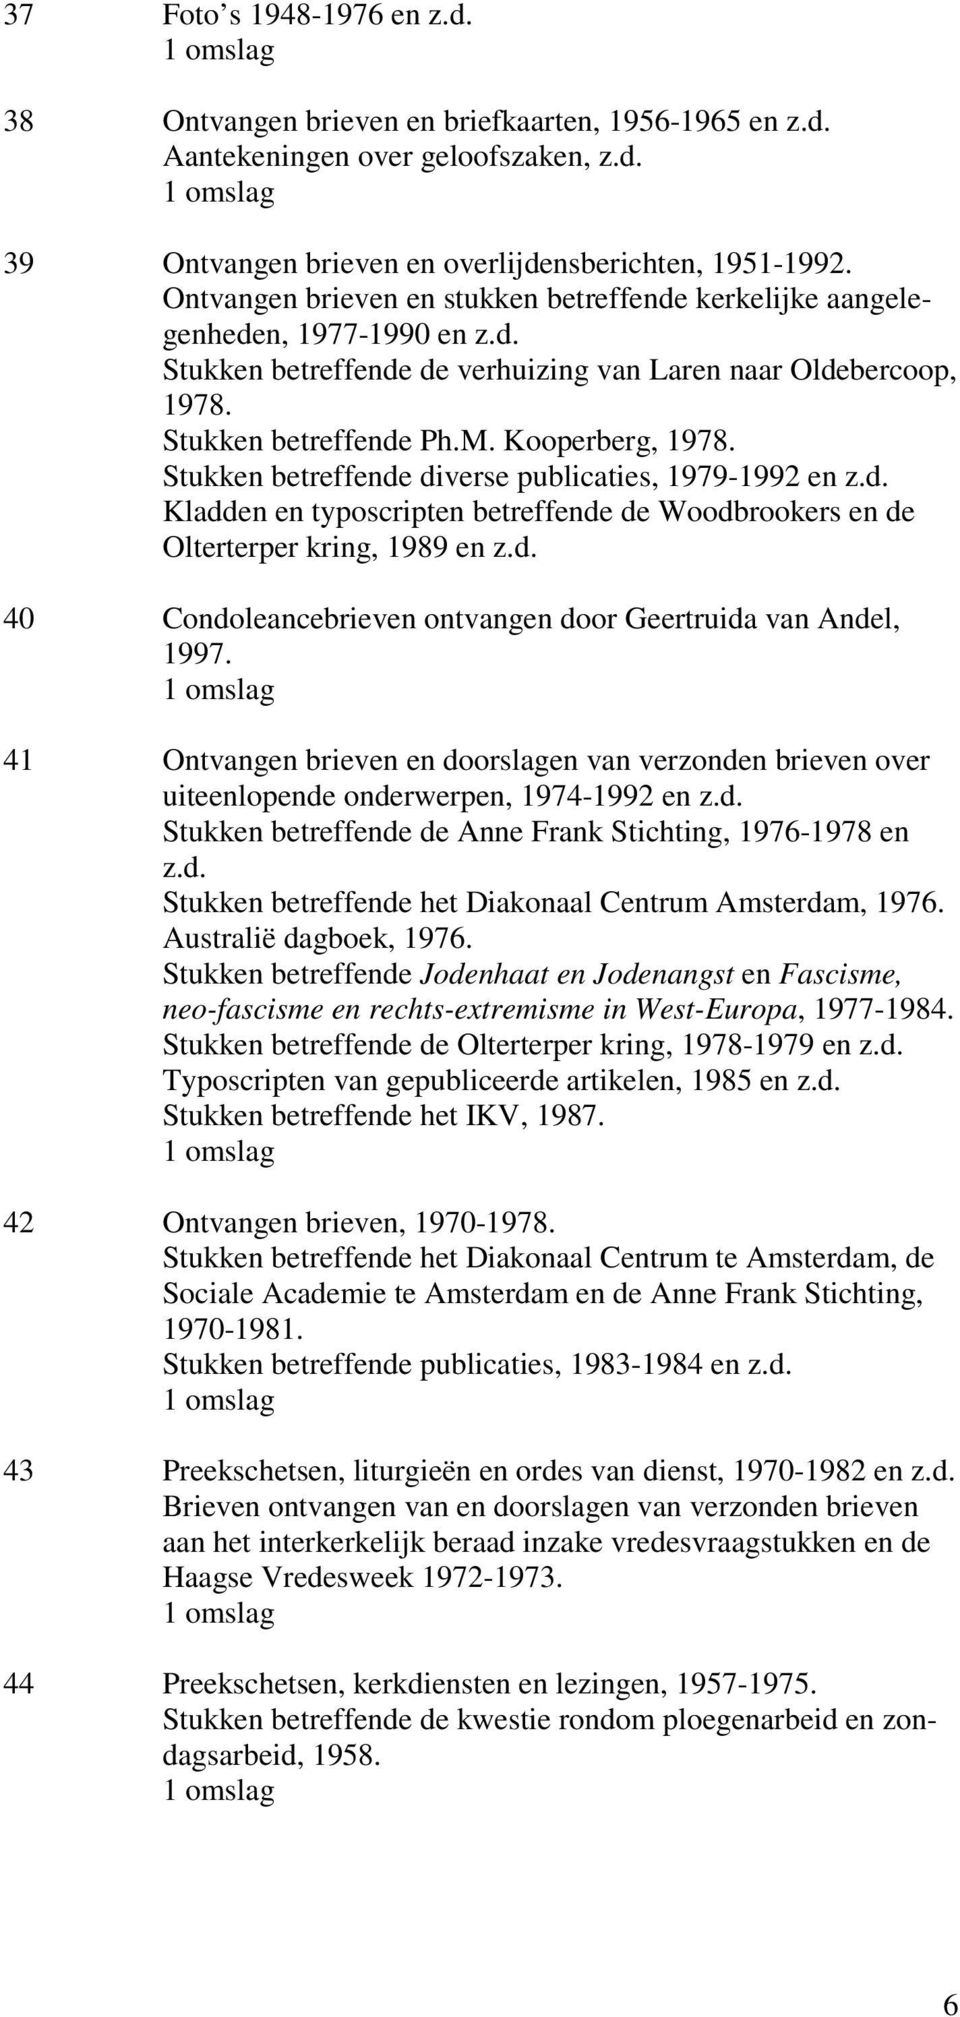 Stukken betreffende diverse publicaties, 1979-1992 en z.d. Kladden en typoscripten betreffende de Woodbrookers en de Olterterper kring, 1989 en z.d. 40 Condoleancebrieven ontvangen door Geertruida van Andel, 1997.